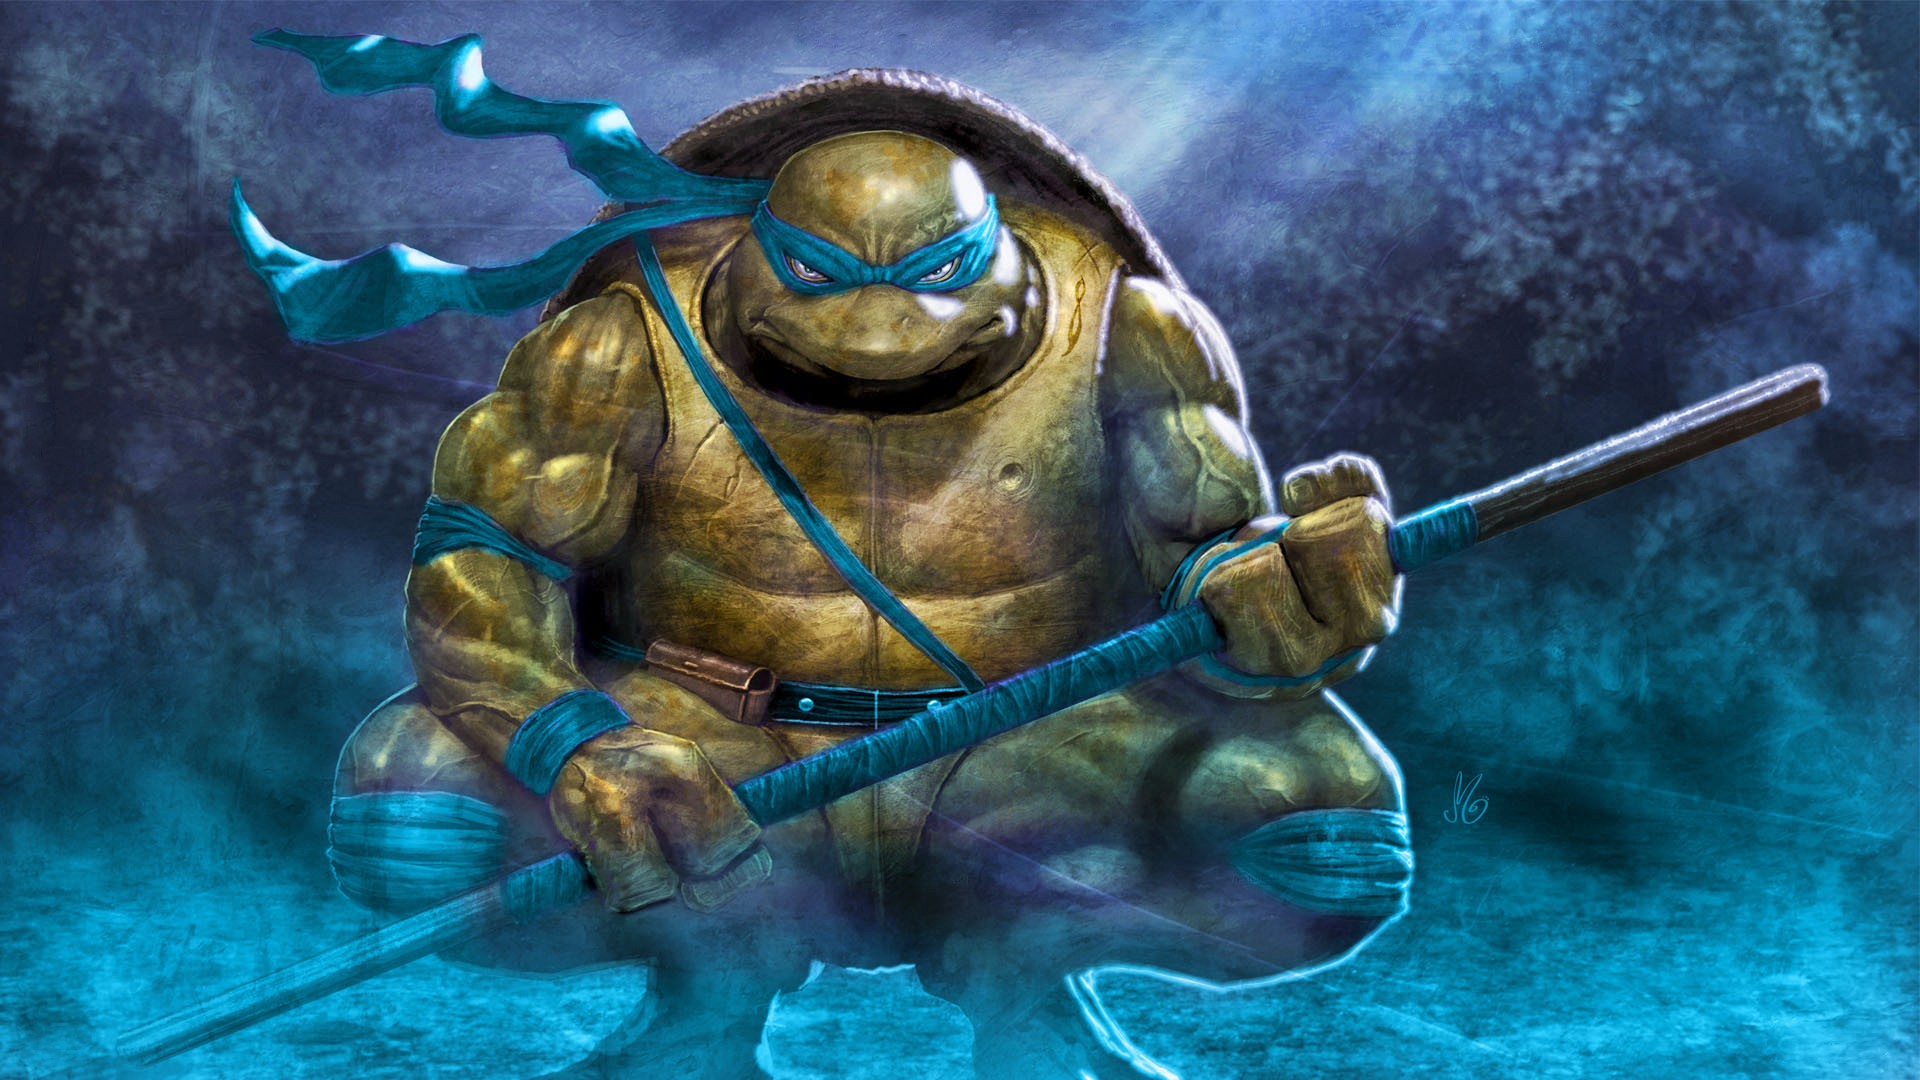 General 1920x1080 Teenage Mutant Ninja Turtles Leonardo (TMNT) warrior blue